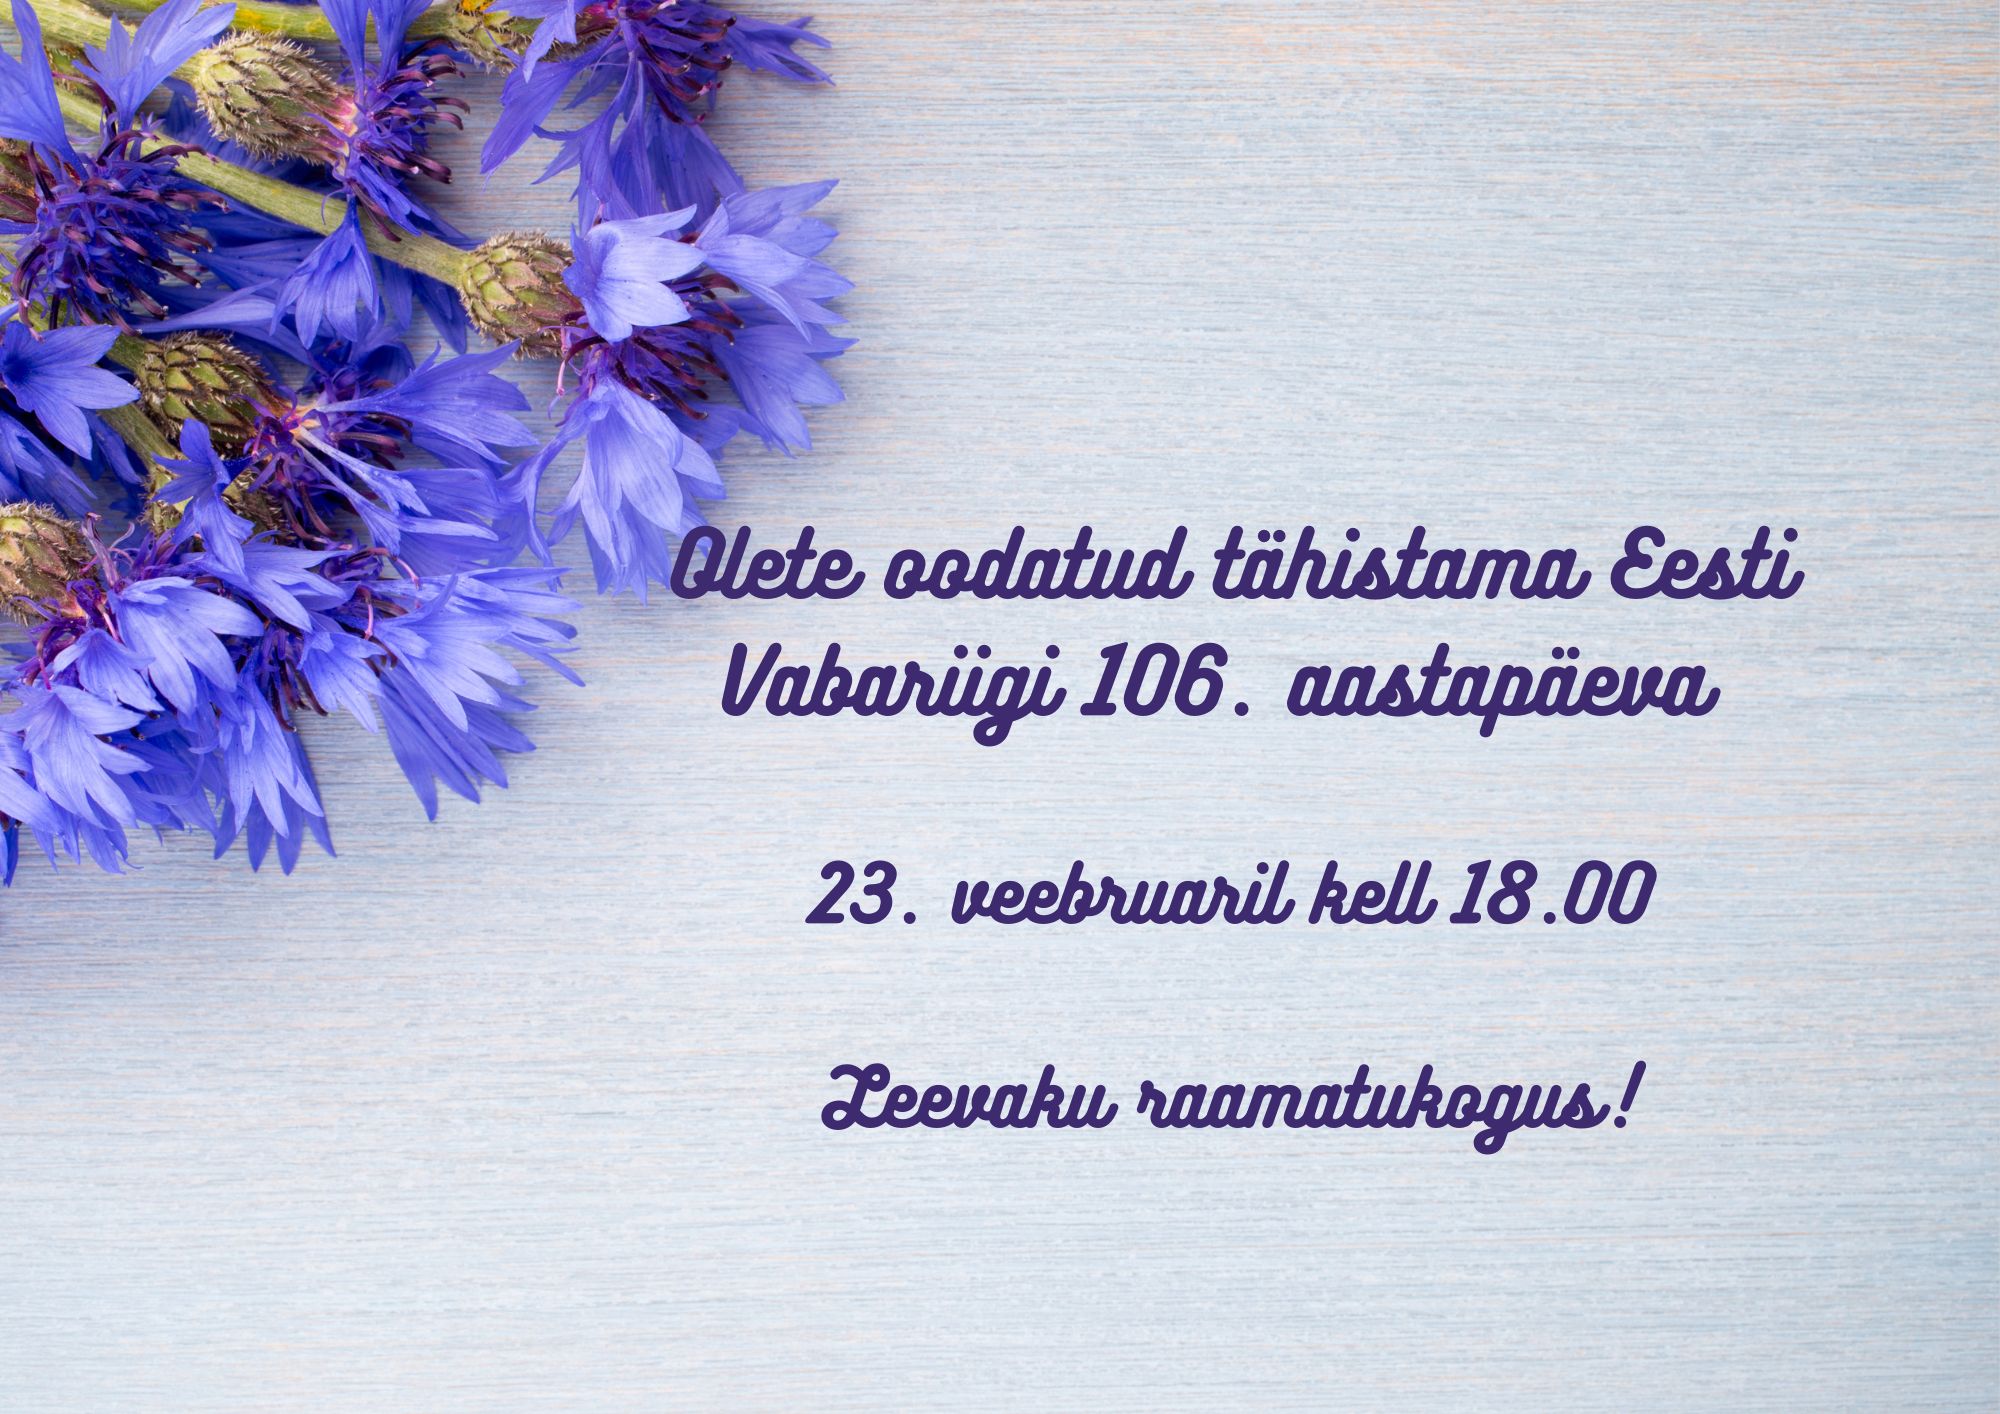 Eesti Vabariigi 106. aastapäeva tähistamine Leevakul @ Leevaku raamatukogu | Leevaku | Põlva maakond | Eesti